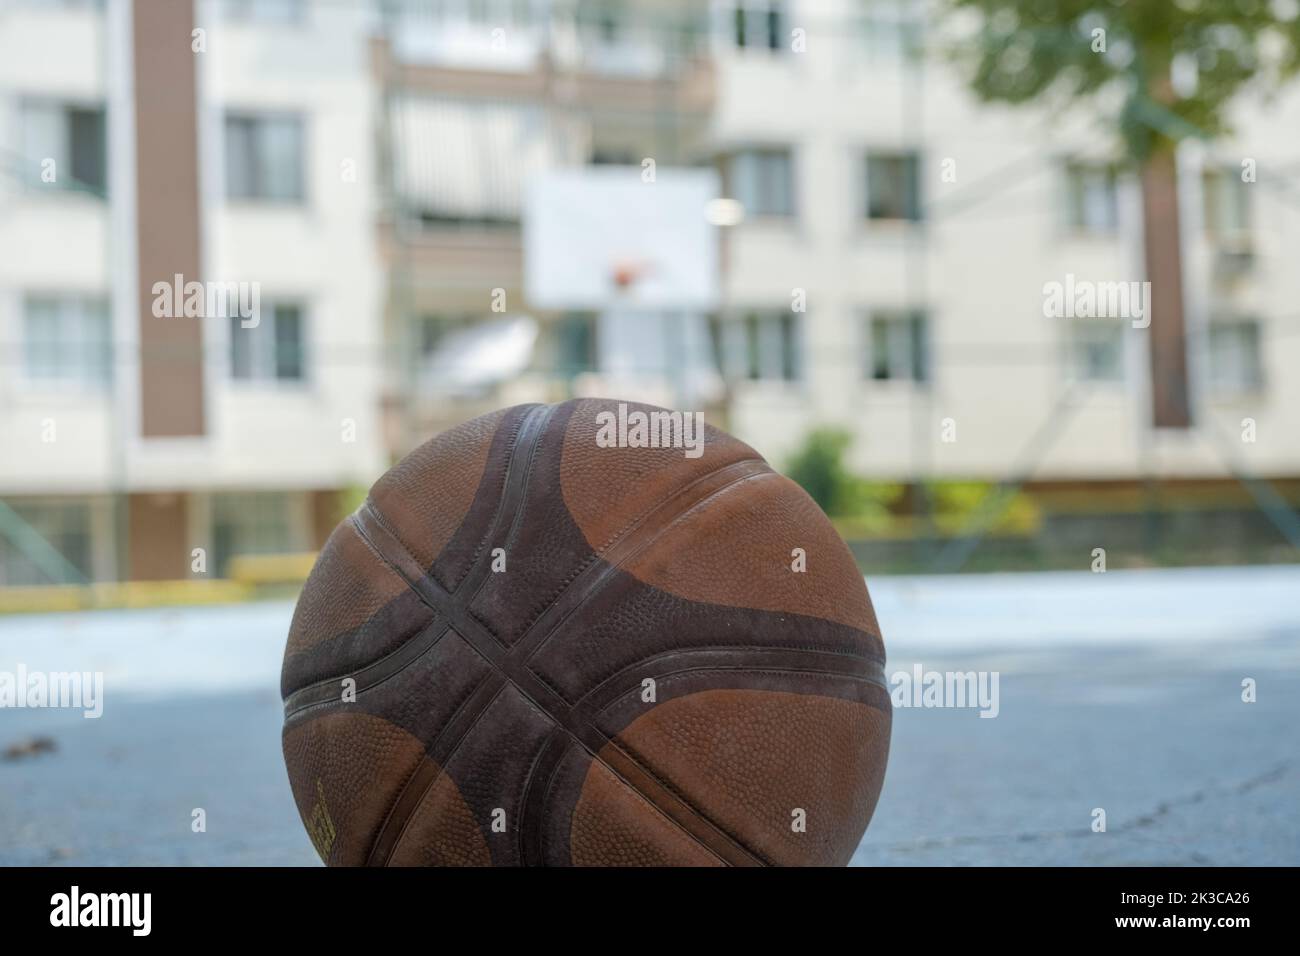 Selektiver Fokus-Basketballball mit Basketballkorb und Gebäuden, Street-Basketball-Konzept, No People-Basketballplatz, Vorort- und Outdoor-Sport Stockfoto